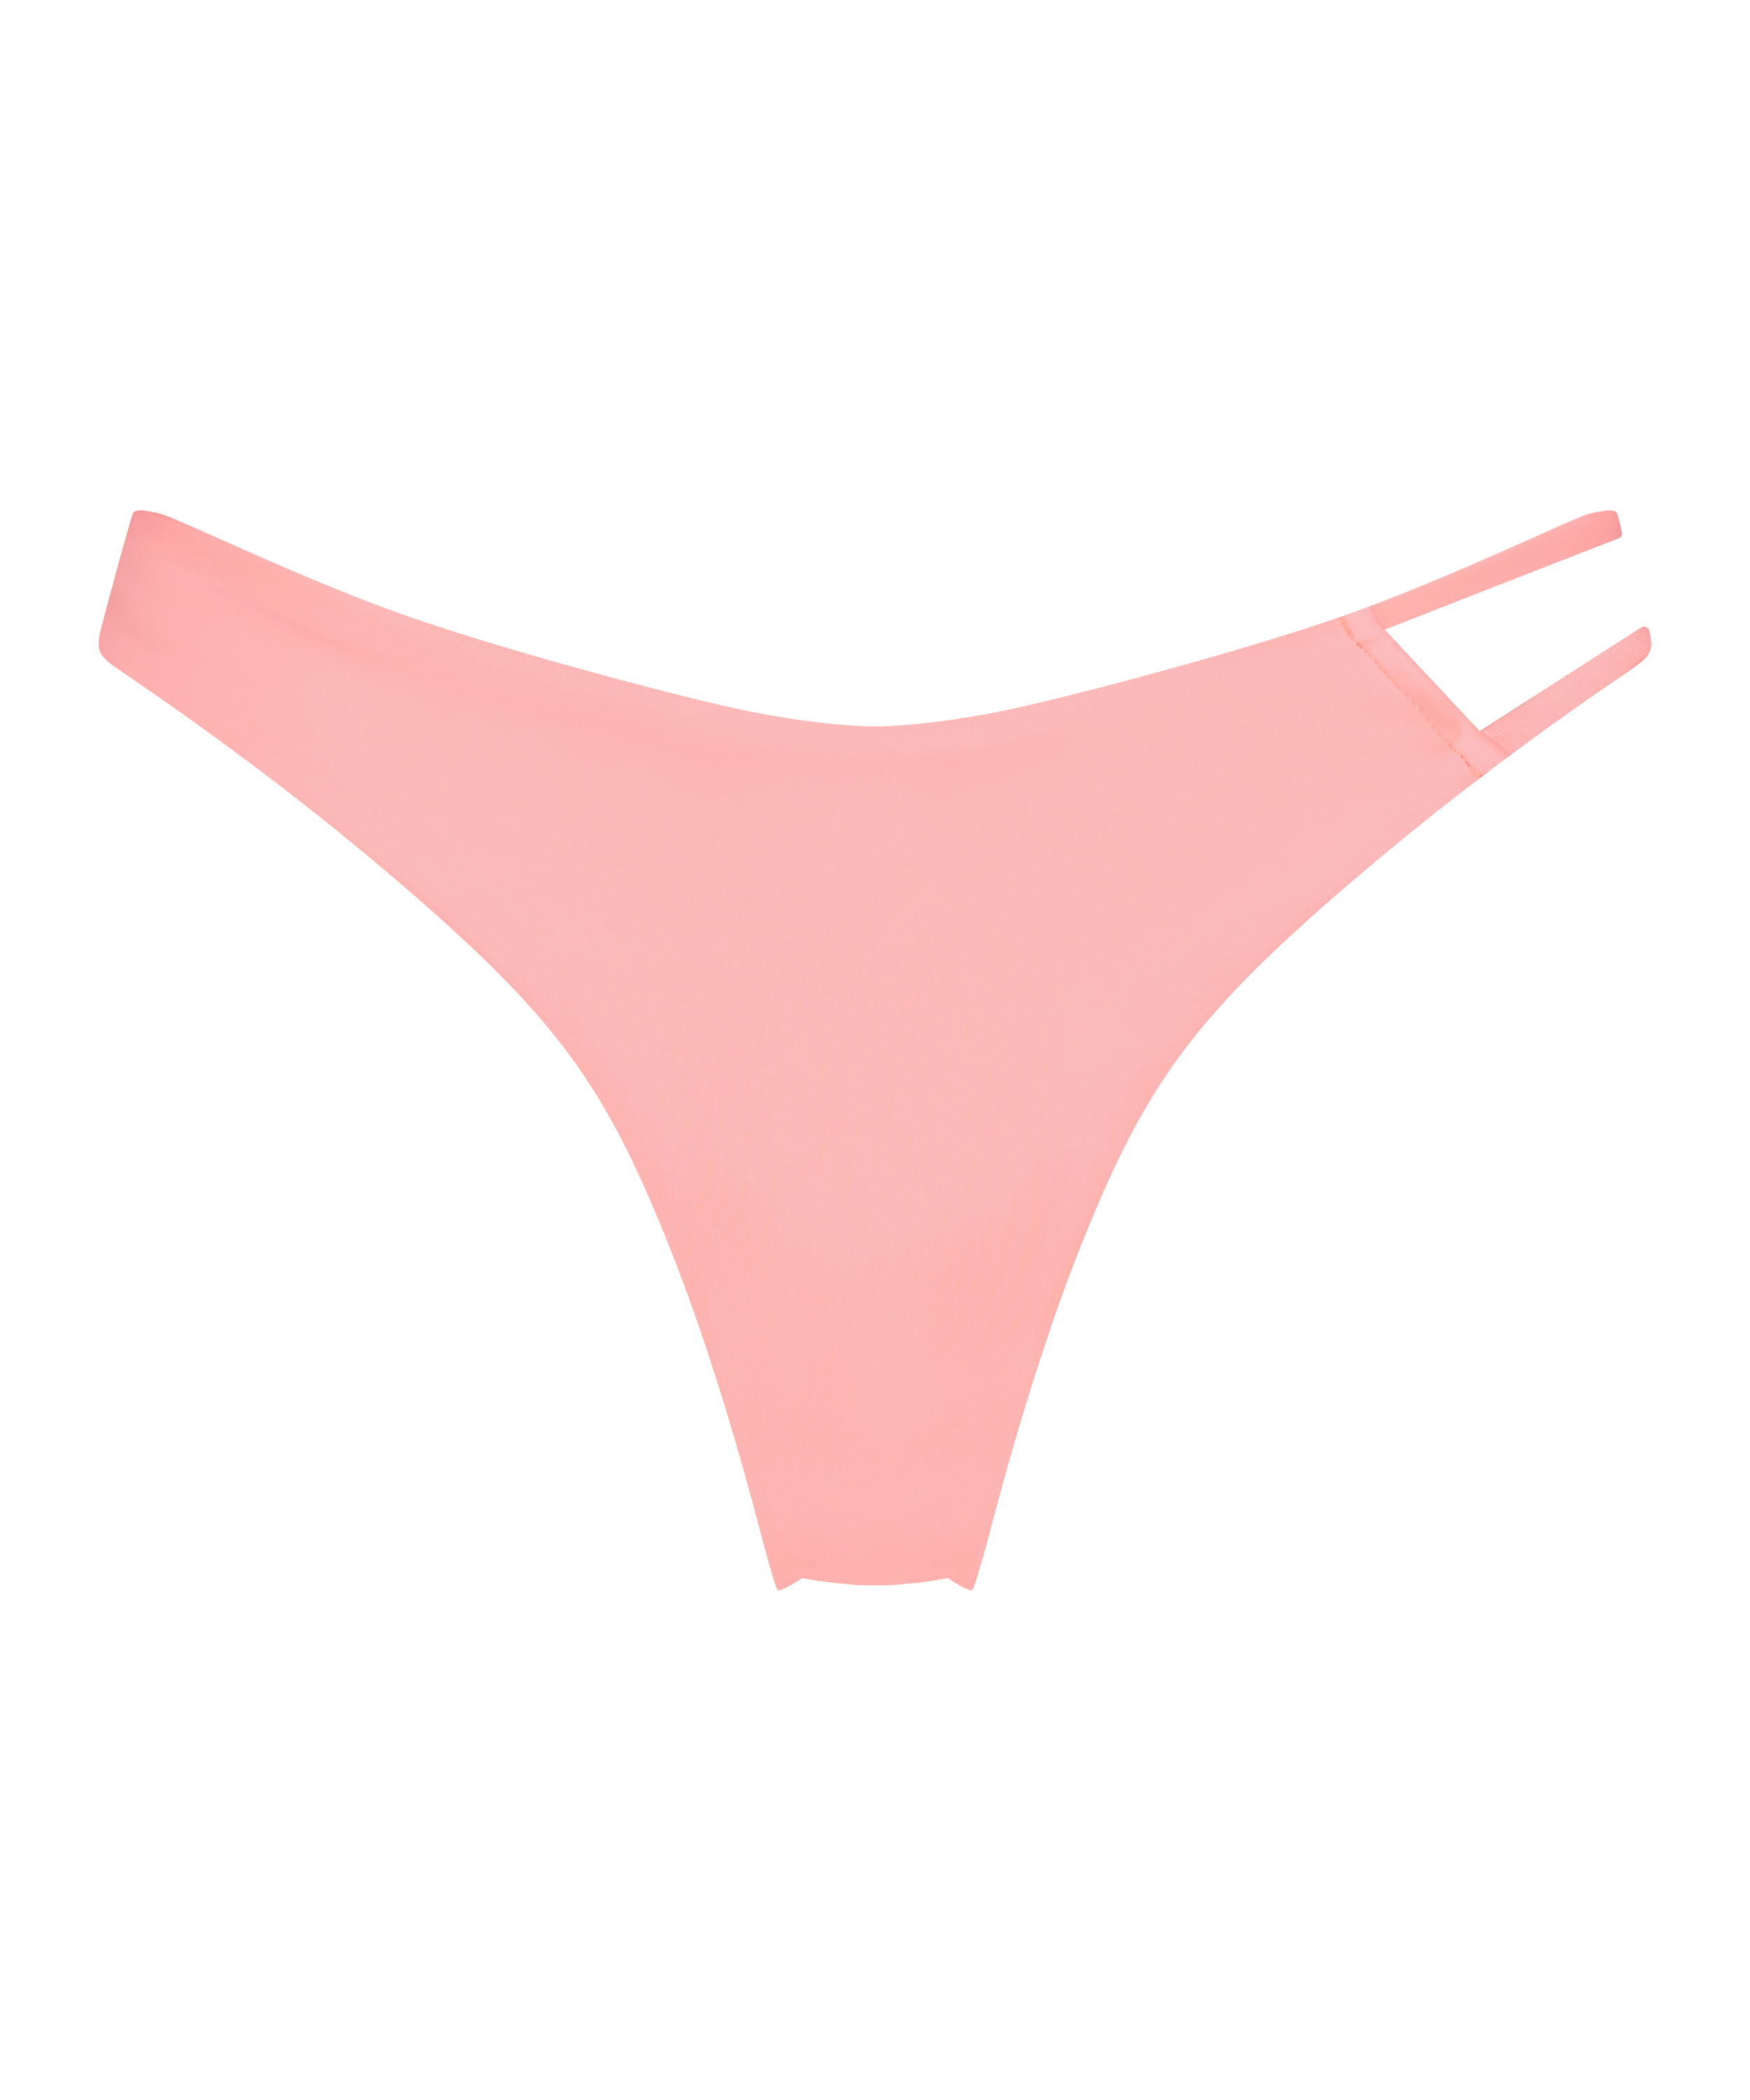 Højt udskåret bikinitrusse Sis, pink, main